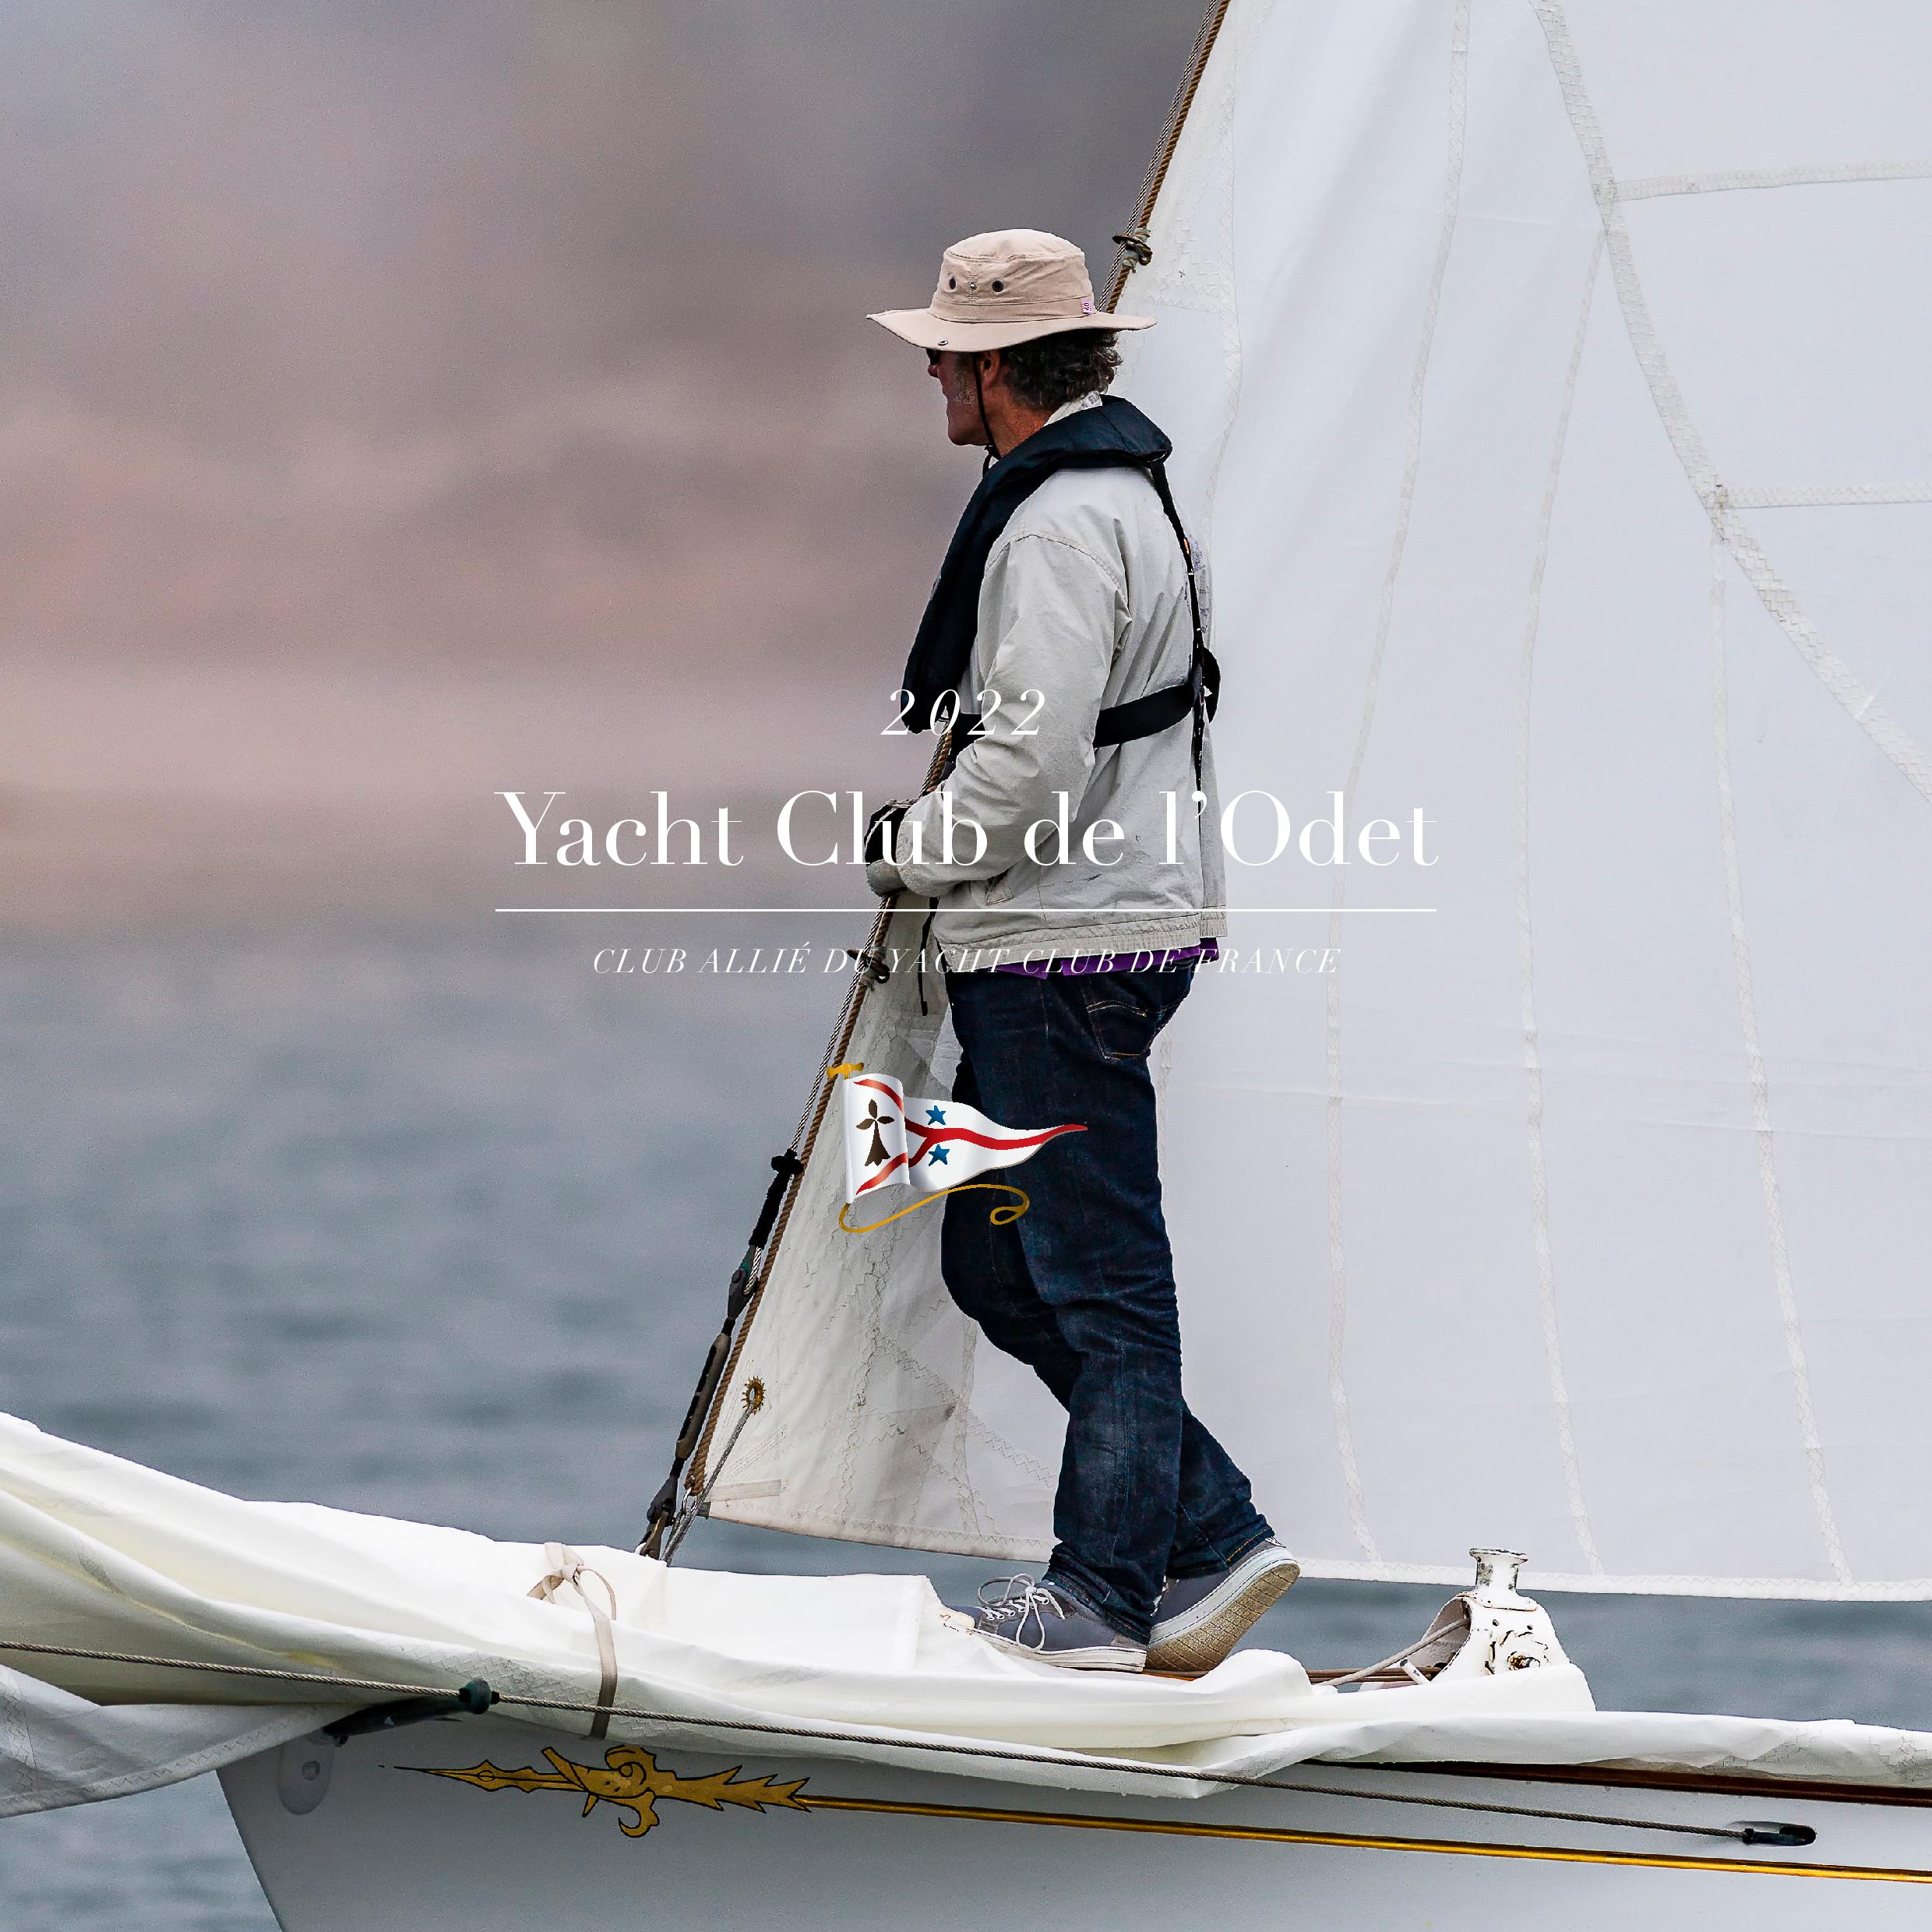 Plaquette annuelle Yacht Club de l'Odet